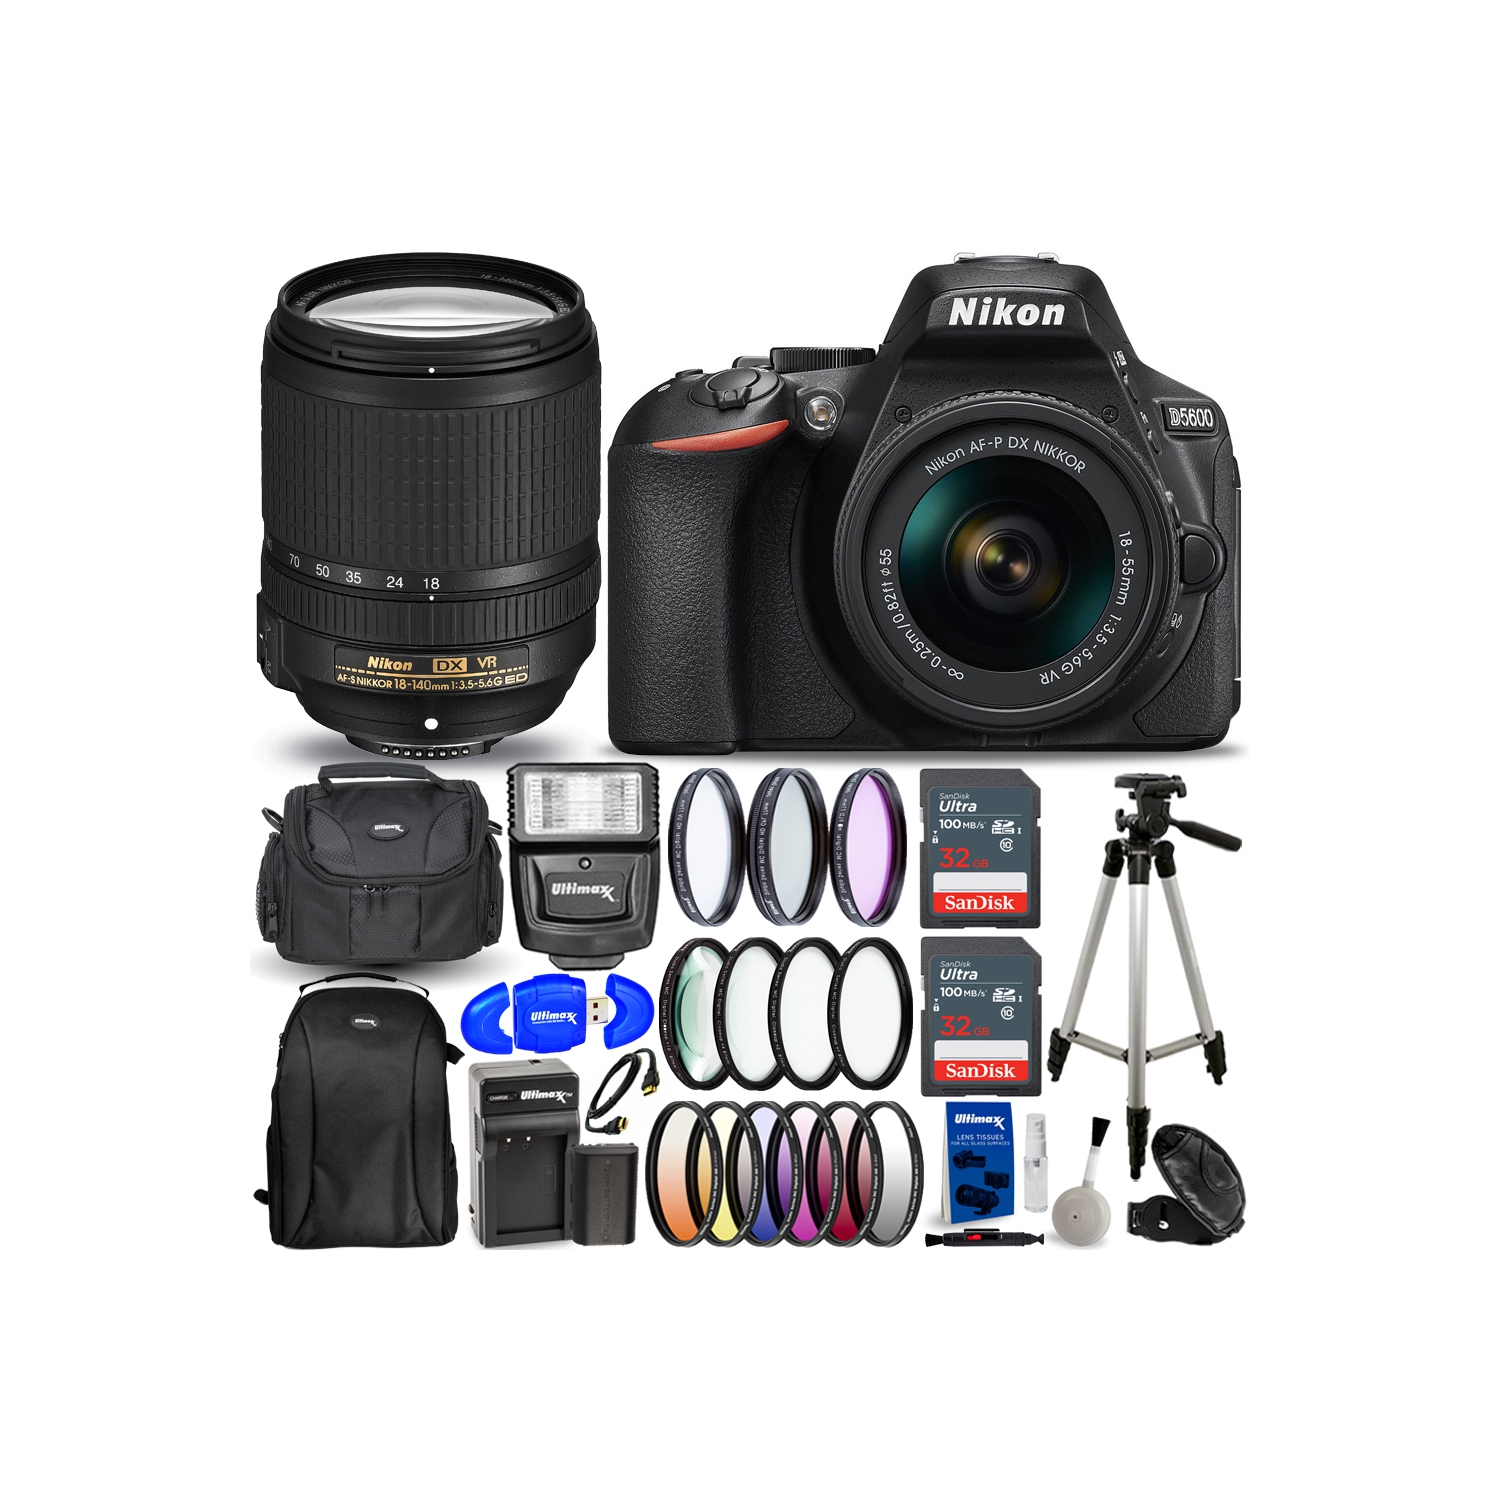 Nikon D5600 DSLR with AF-P 18-55mm + 18-140mm VR Lenses - 18PC Accessory Bundle